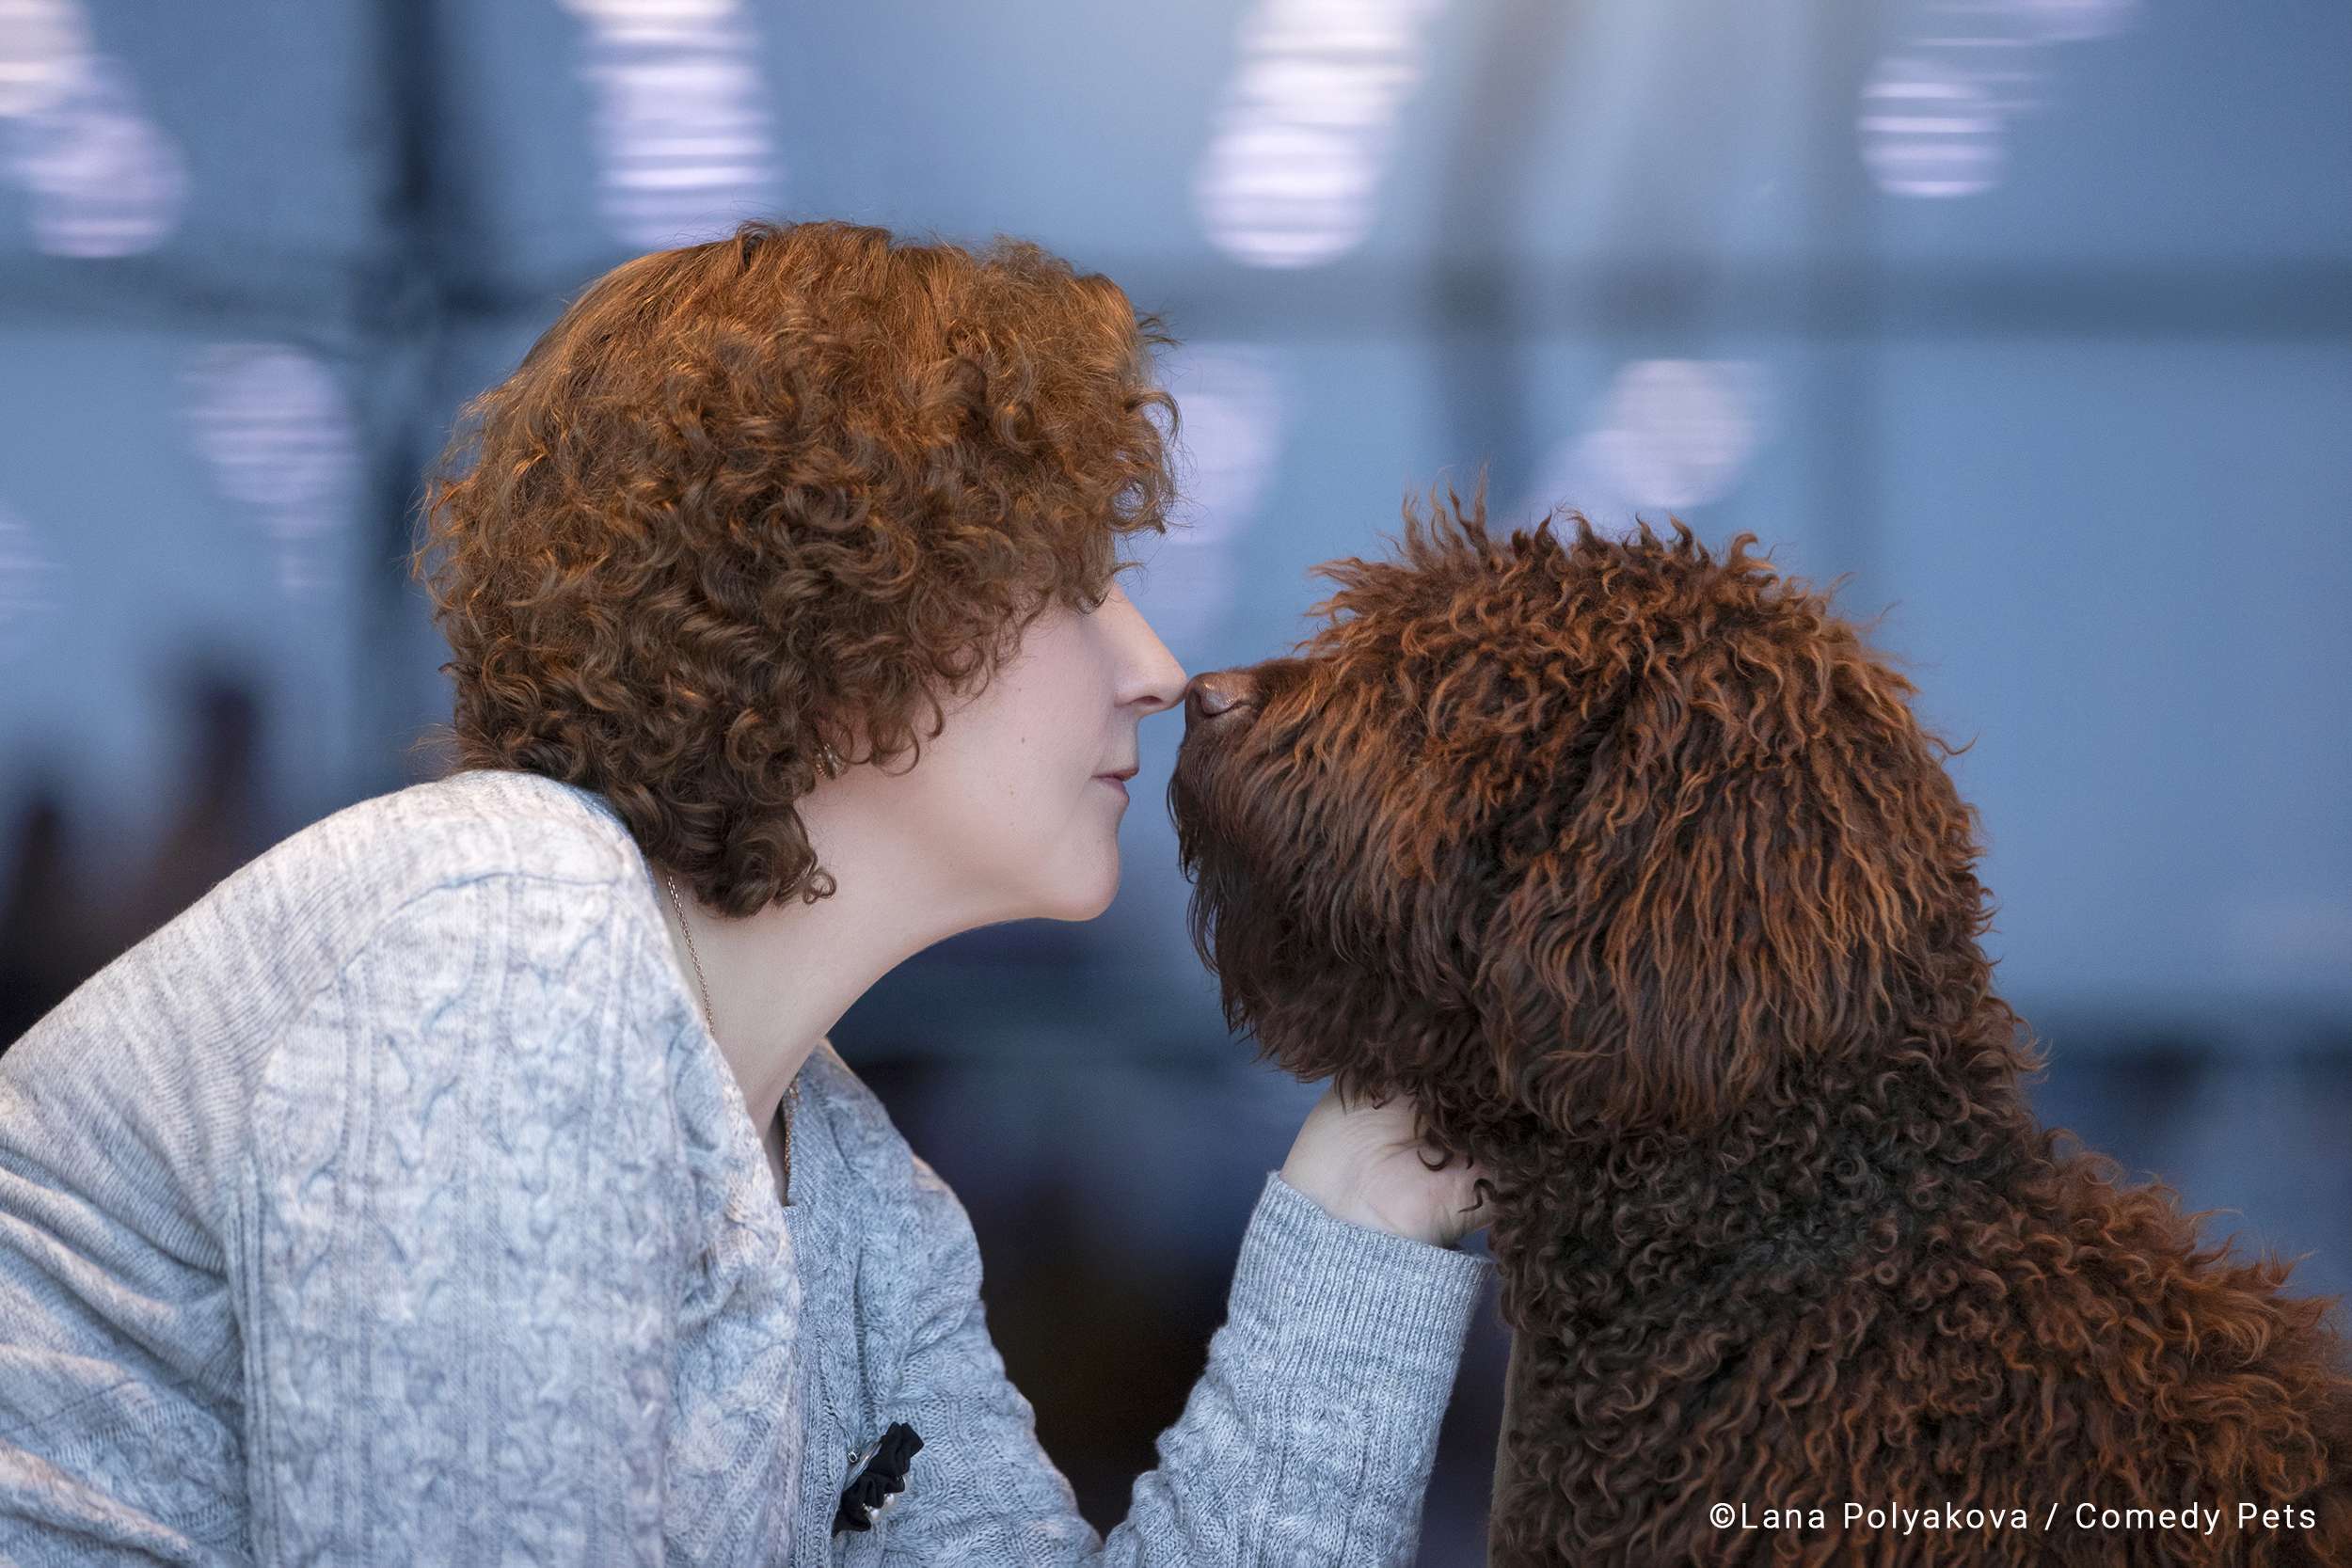 Beijinho de nariz entre dona e cãozinho com cabelos parecidos é finalista do Comedy Pet Awards